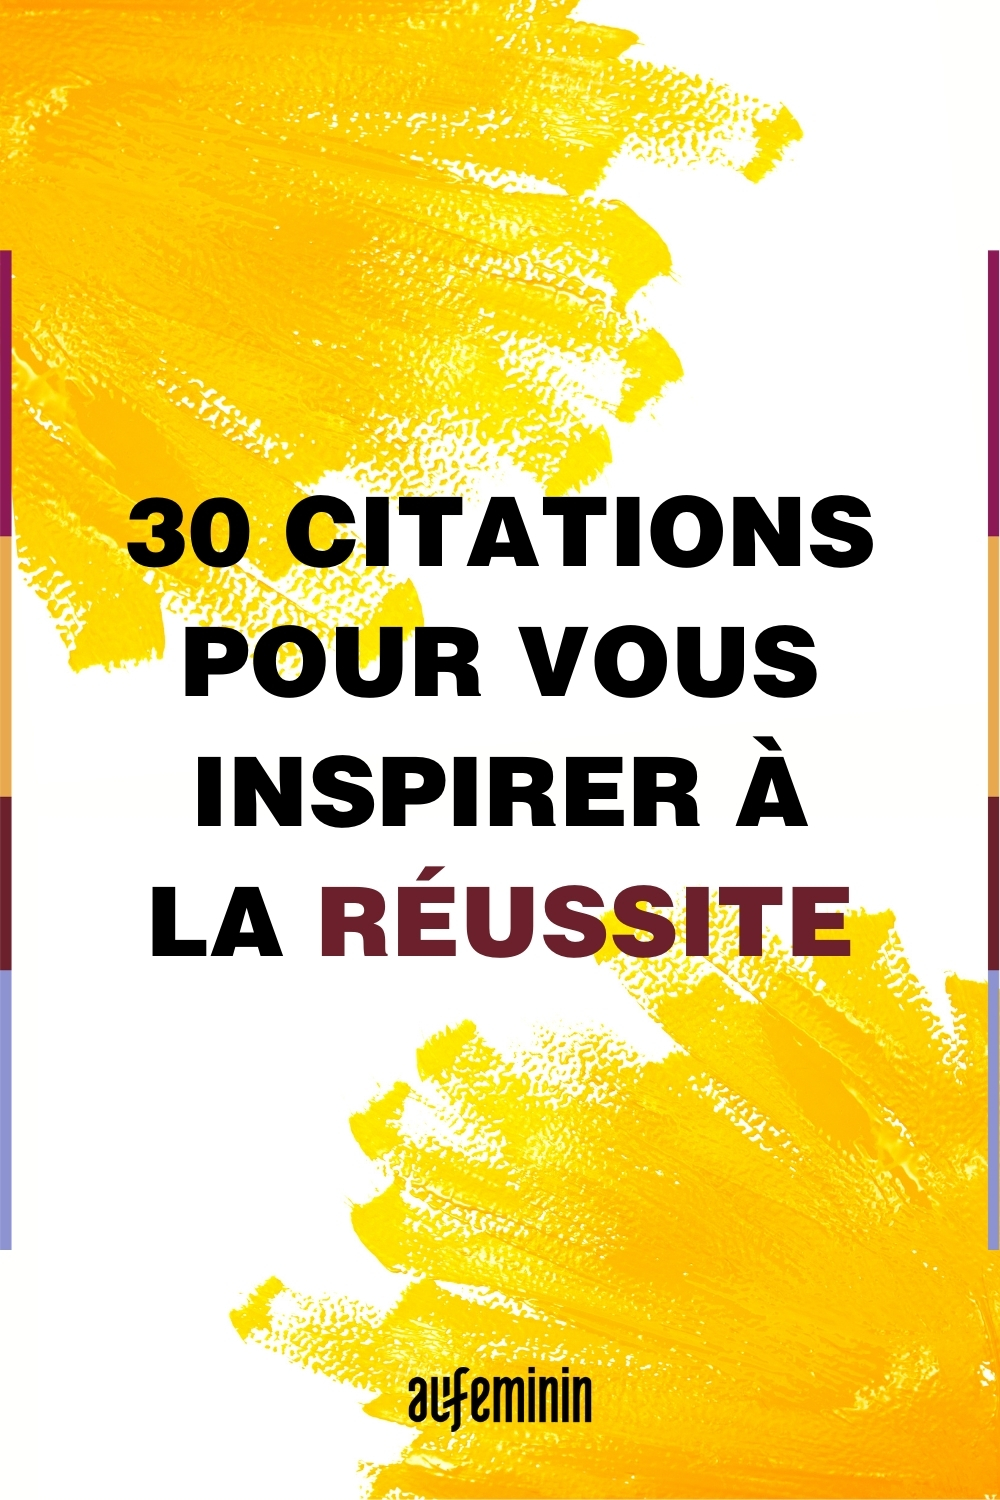 30 Citations Et Astuces Pour Vous Inspirer A La Reussite